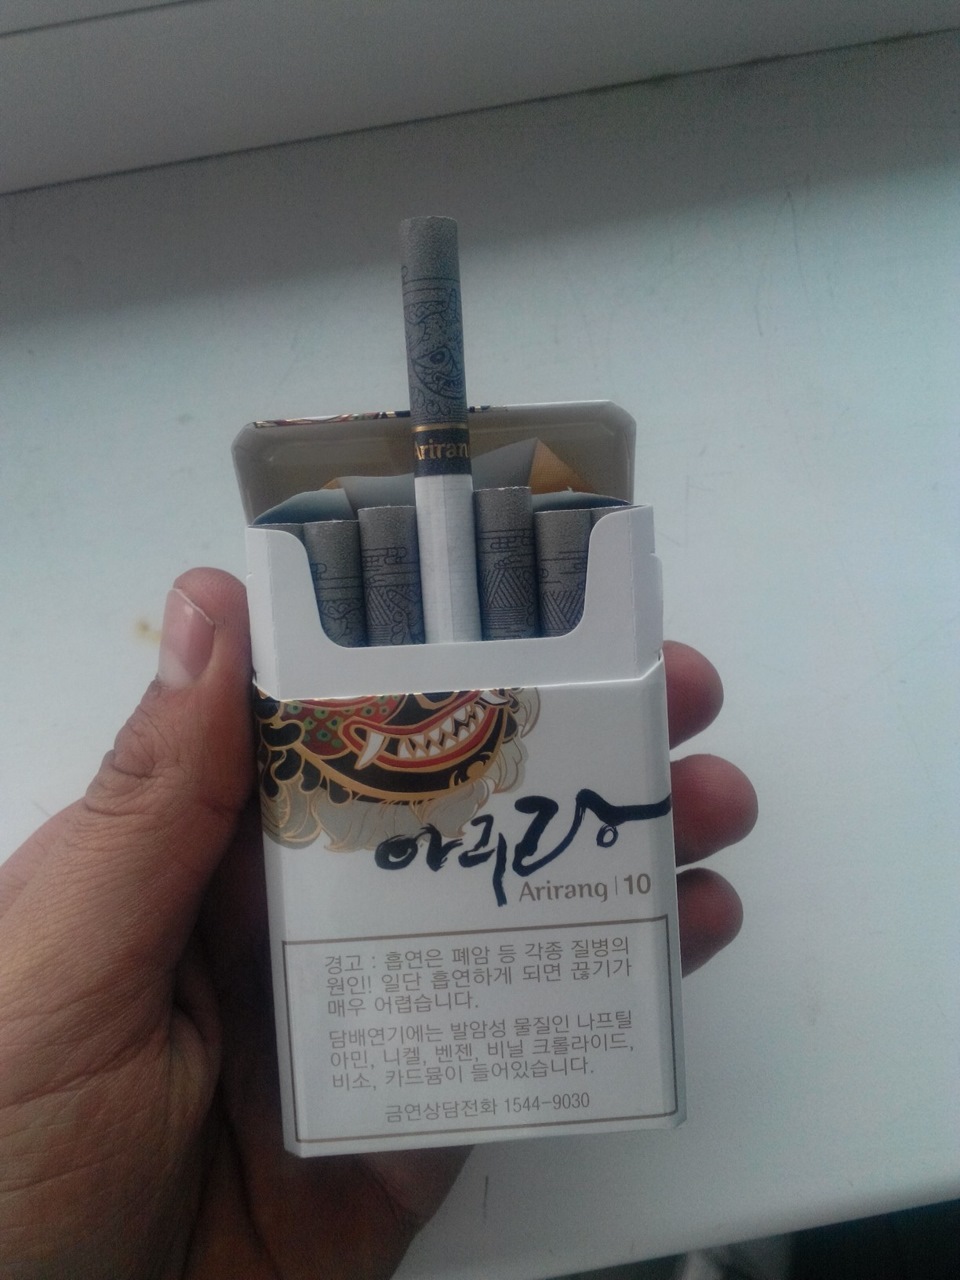 Сигареты кореи